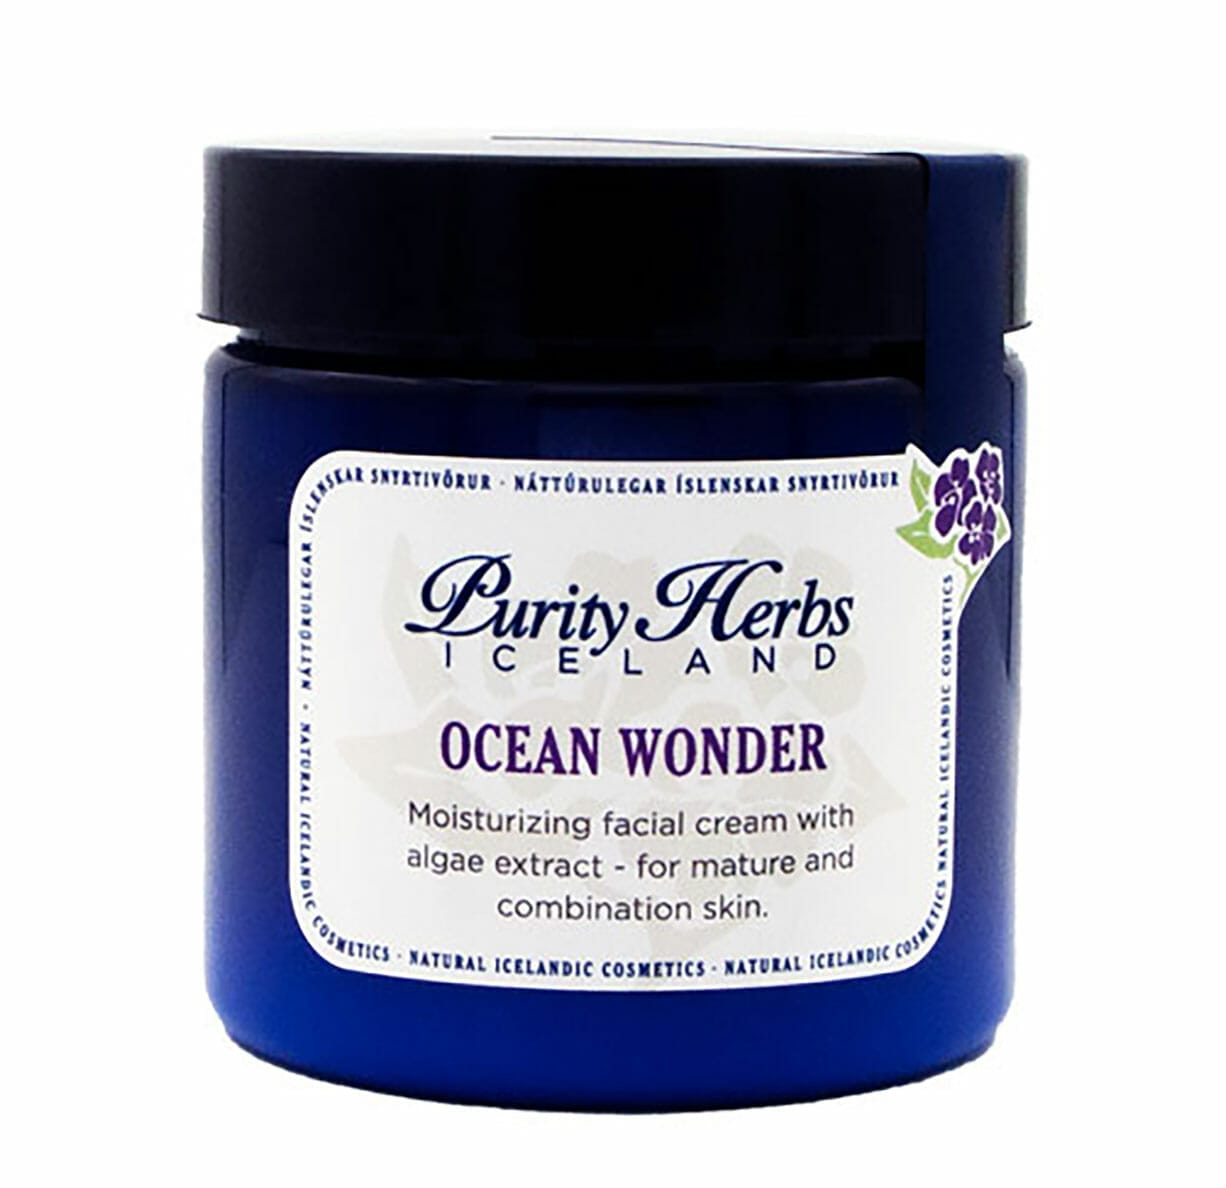 Ocean Wonder 120 ml